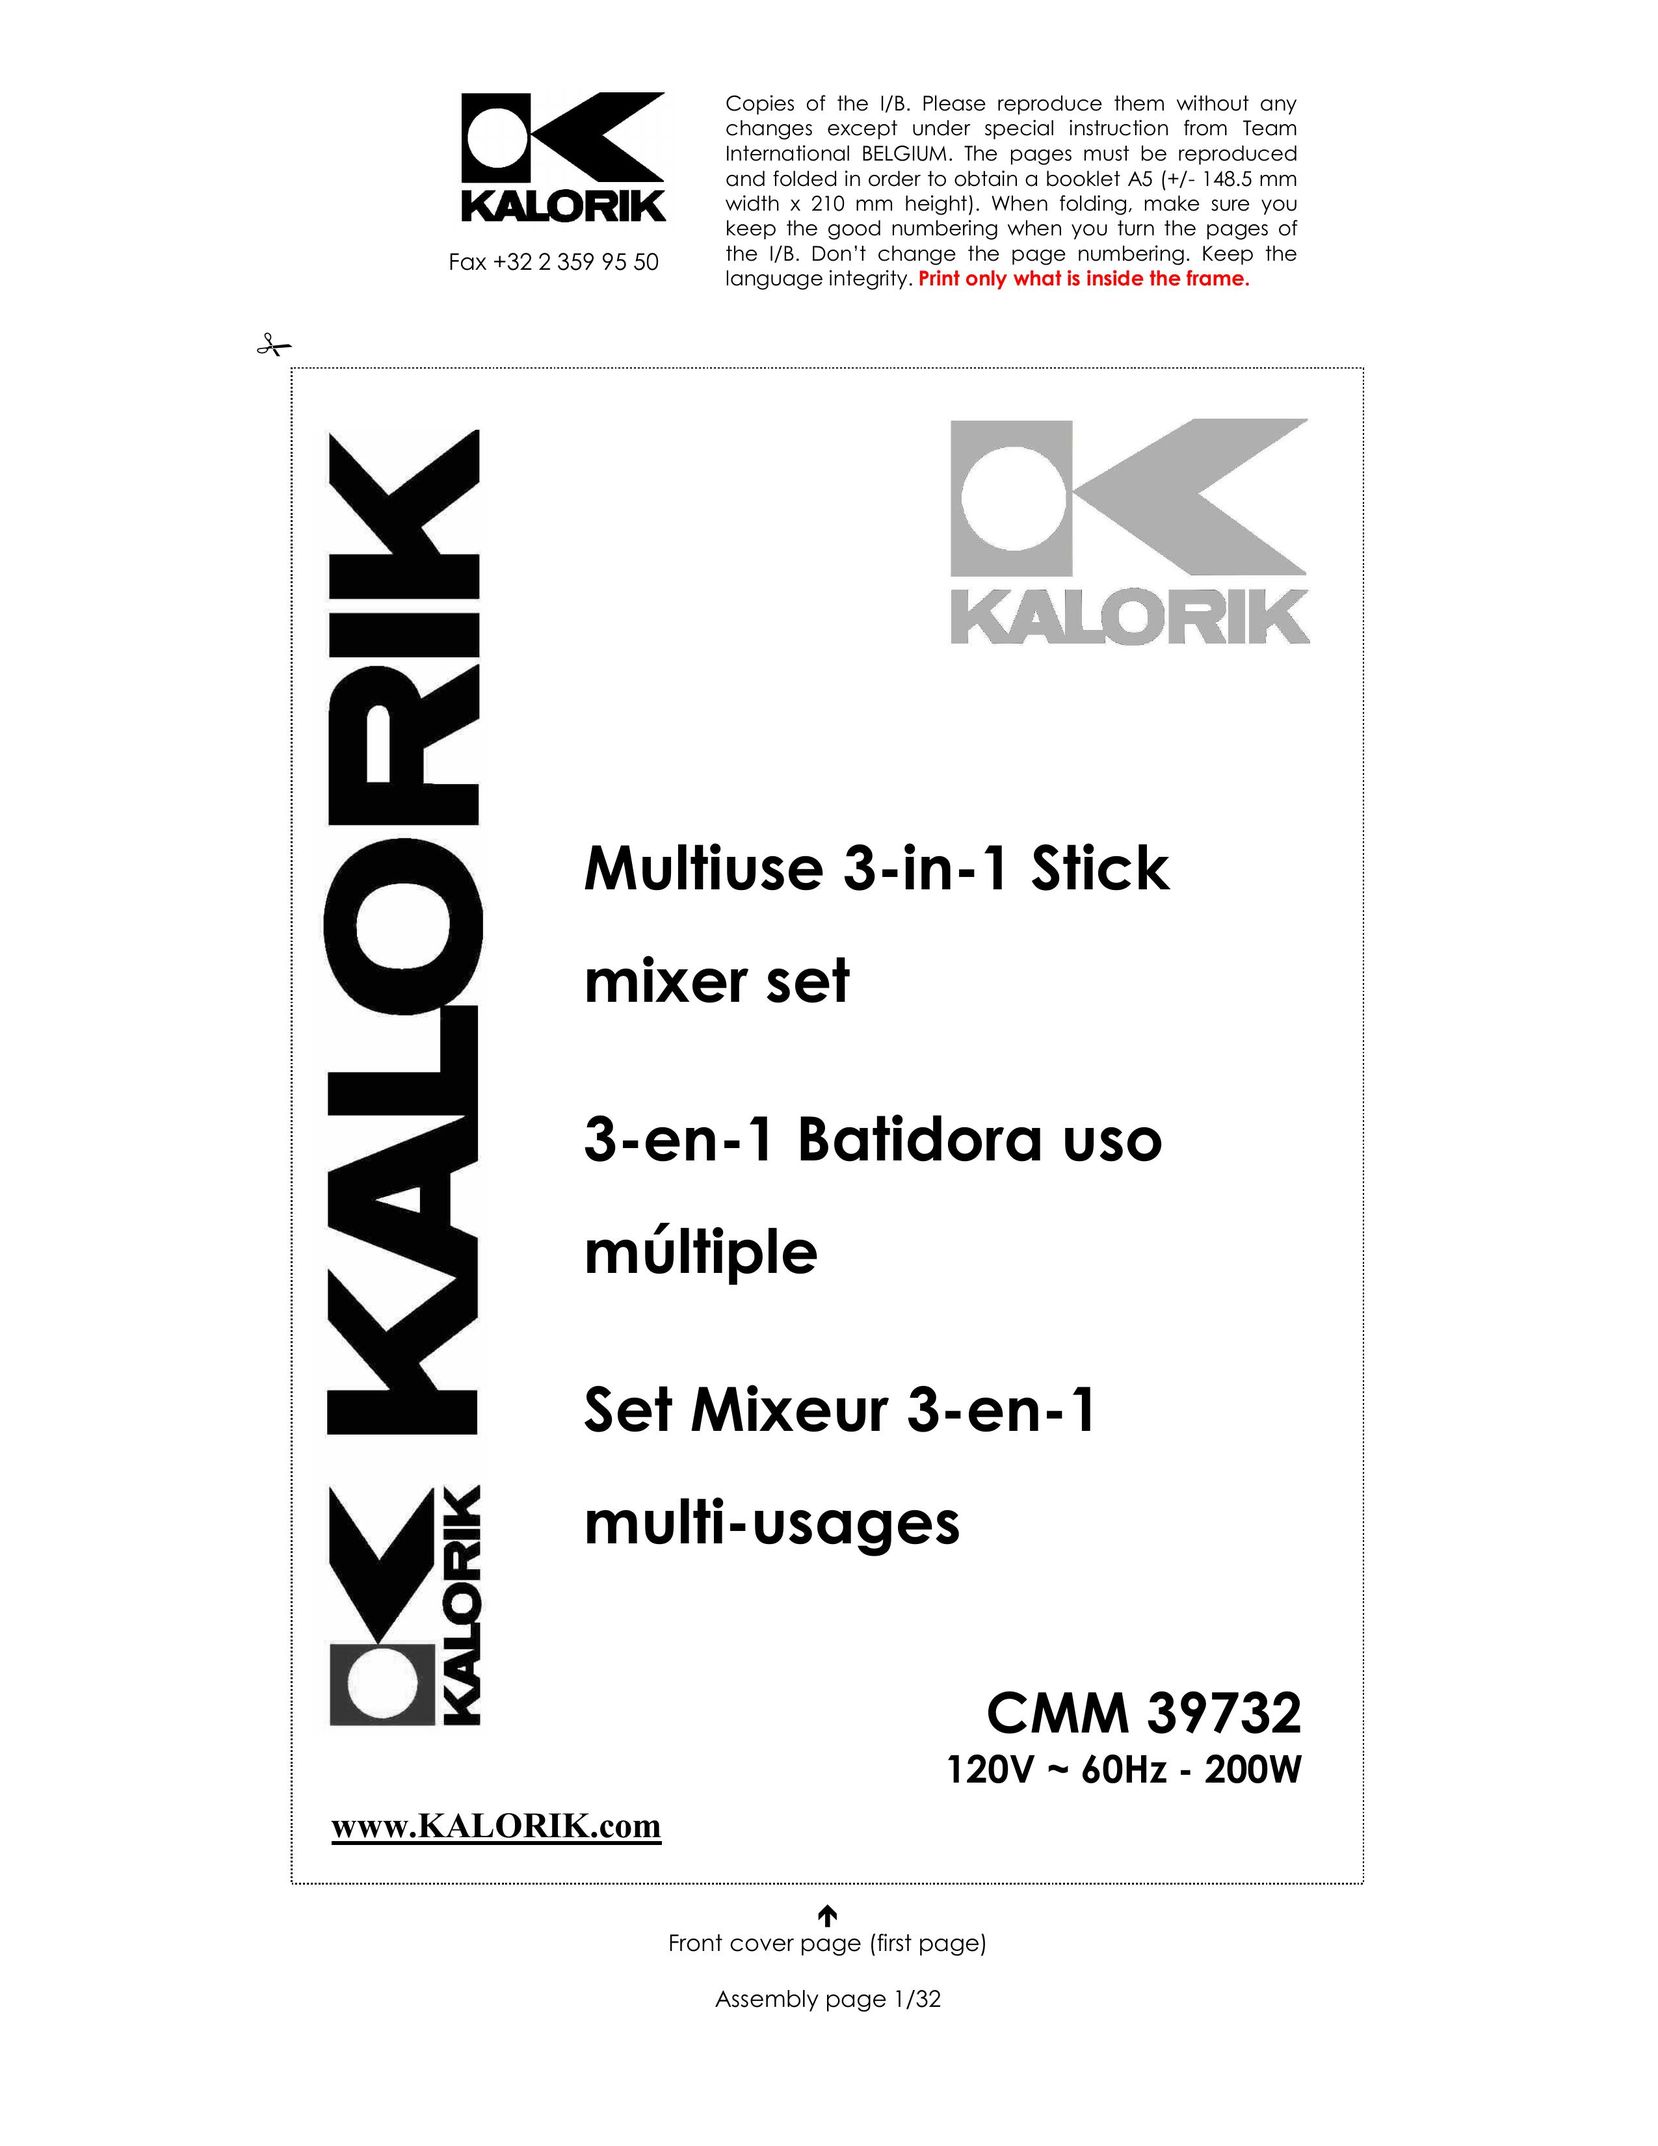 Kalorik CMM 39732 Mixer User Manual